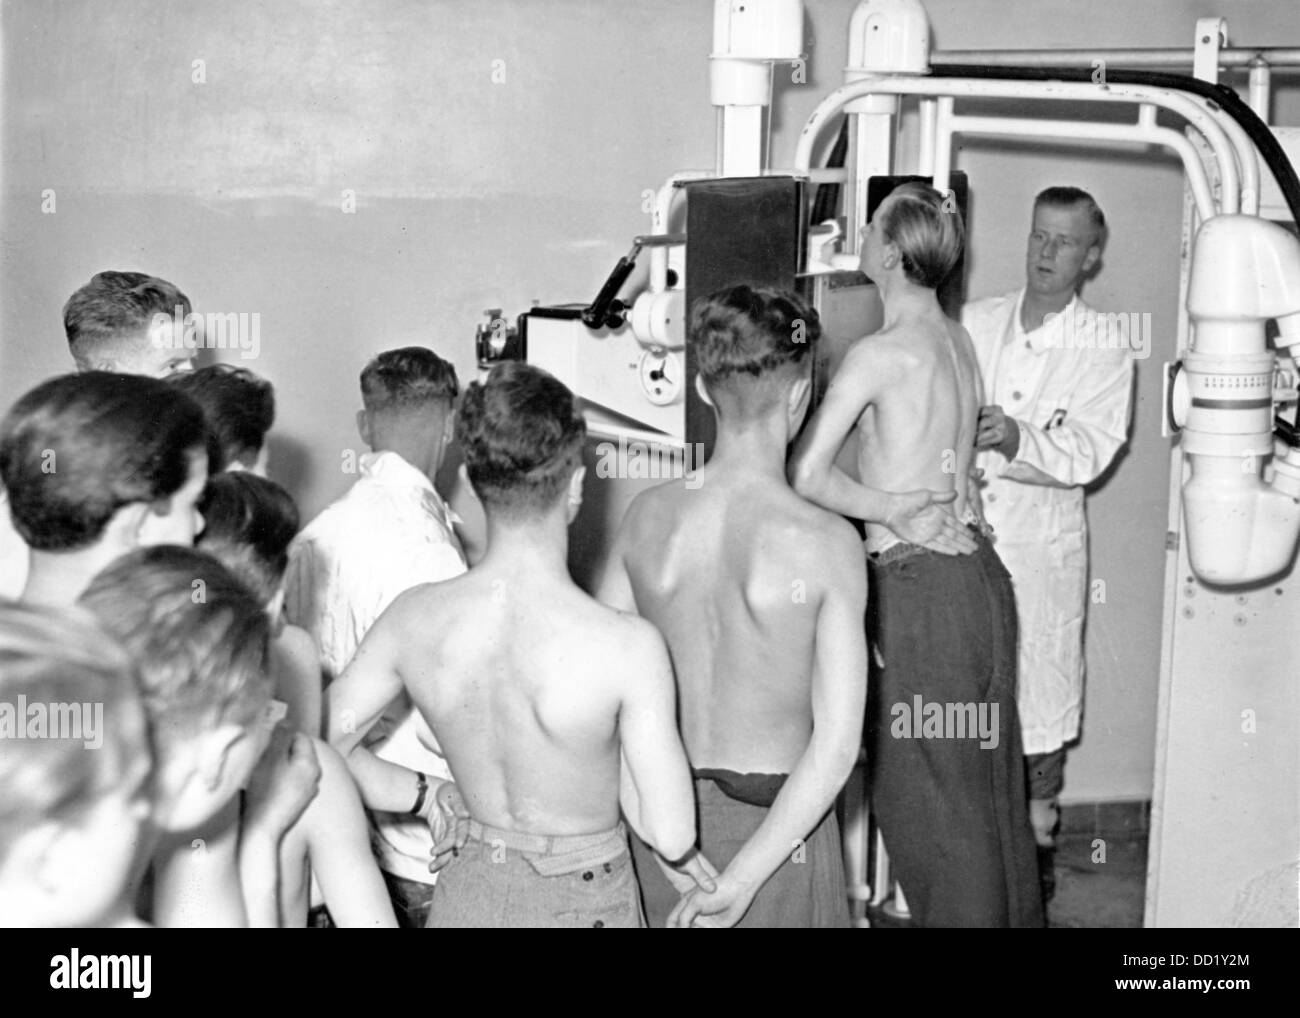 L'image de la propagande nazie! Montre les jeunes de 17 ans qui sont radiographiés avec une machine à rayons X dans un département de santé à Berlin, en janvier 1944. Fotoarchiv für Zeitgeschichte Banque D'Images